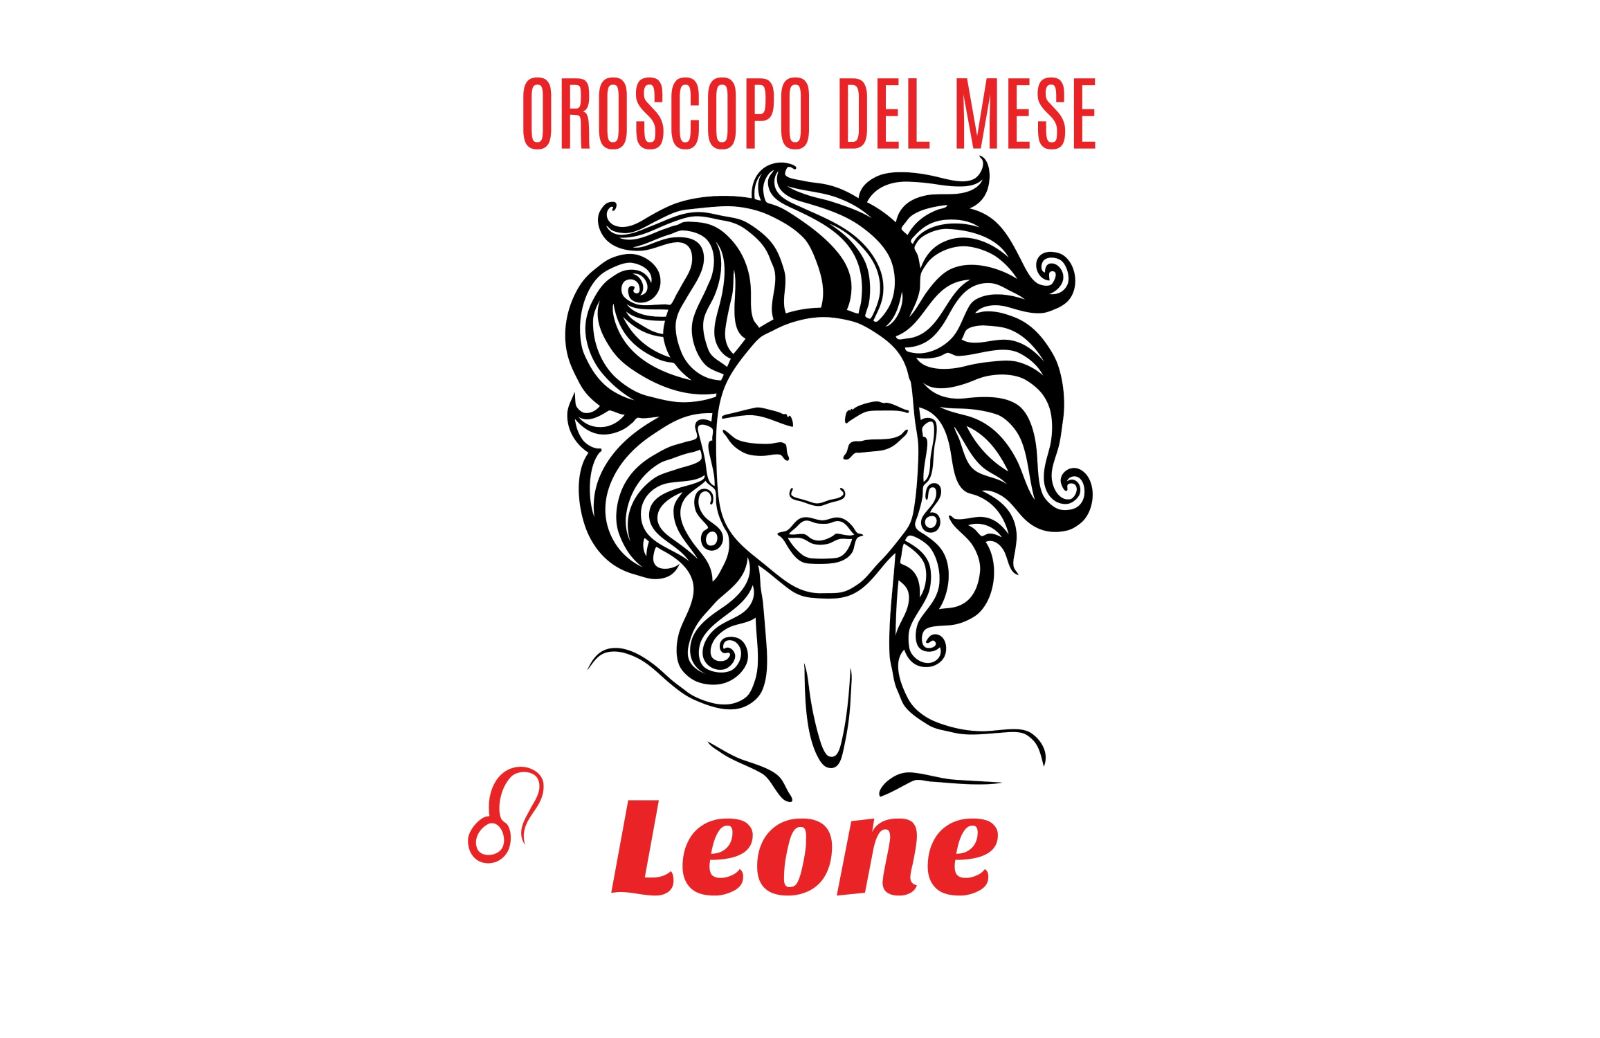 Oroscopo del mese: Leone - ottobre 2018